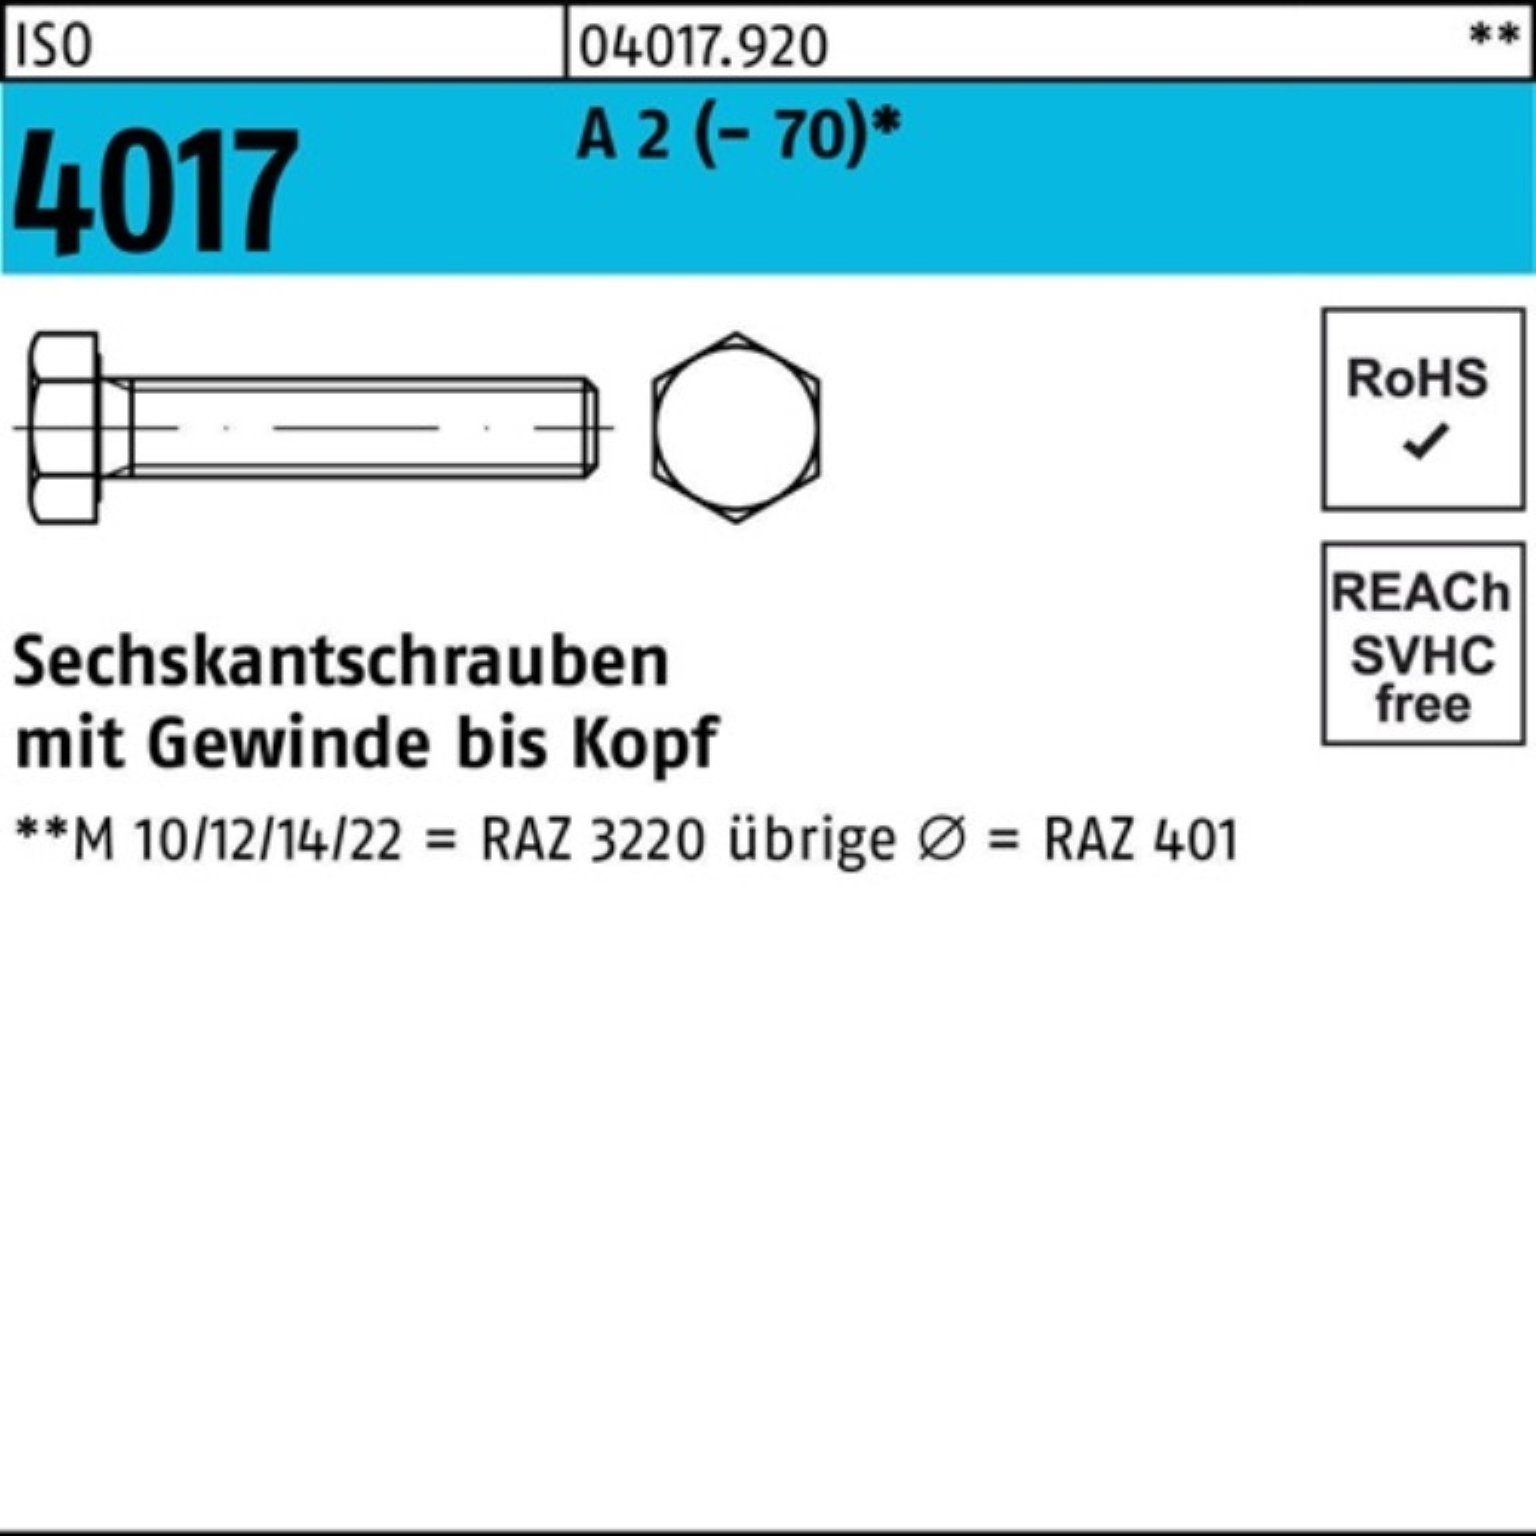 Bufab Sechskantschraube 100er Pack Sechskantschraube ISO 4017 VG M10x 130 A 2 (70) 1 Stück